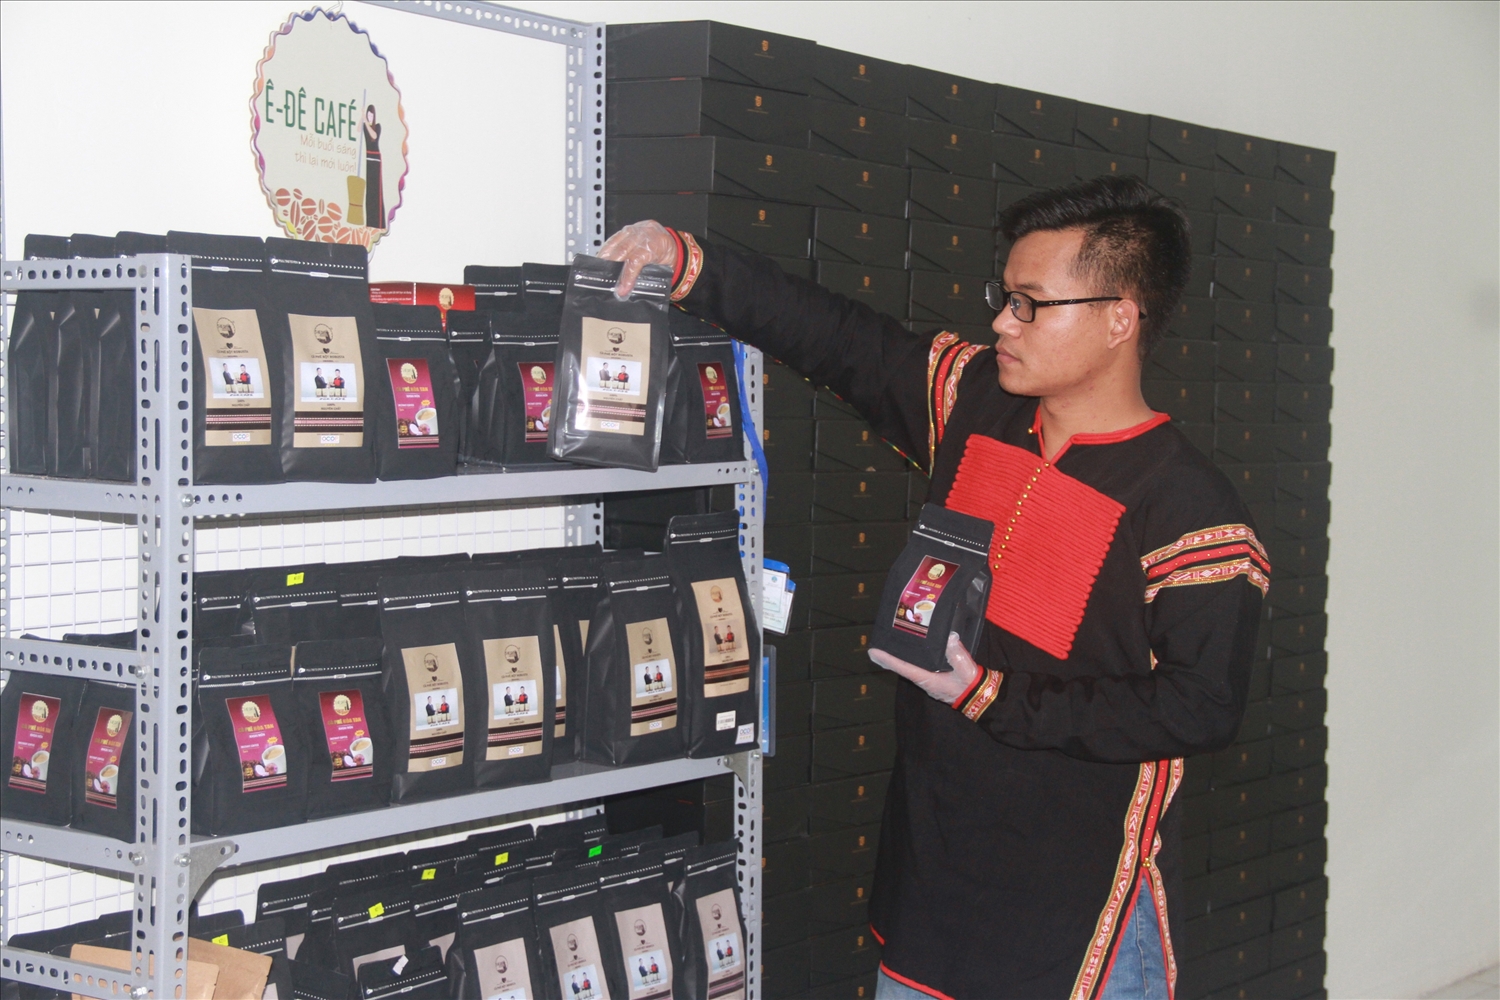 Ê đê Café có thêm nhiều sản phẩm mới, đặc biệt dòng cà phê hòa tan mix củ quả